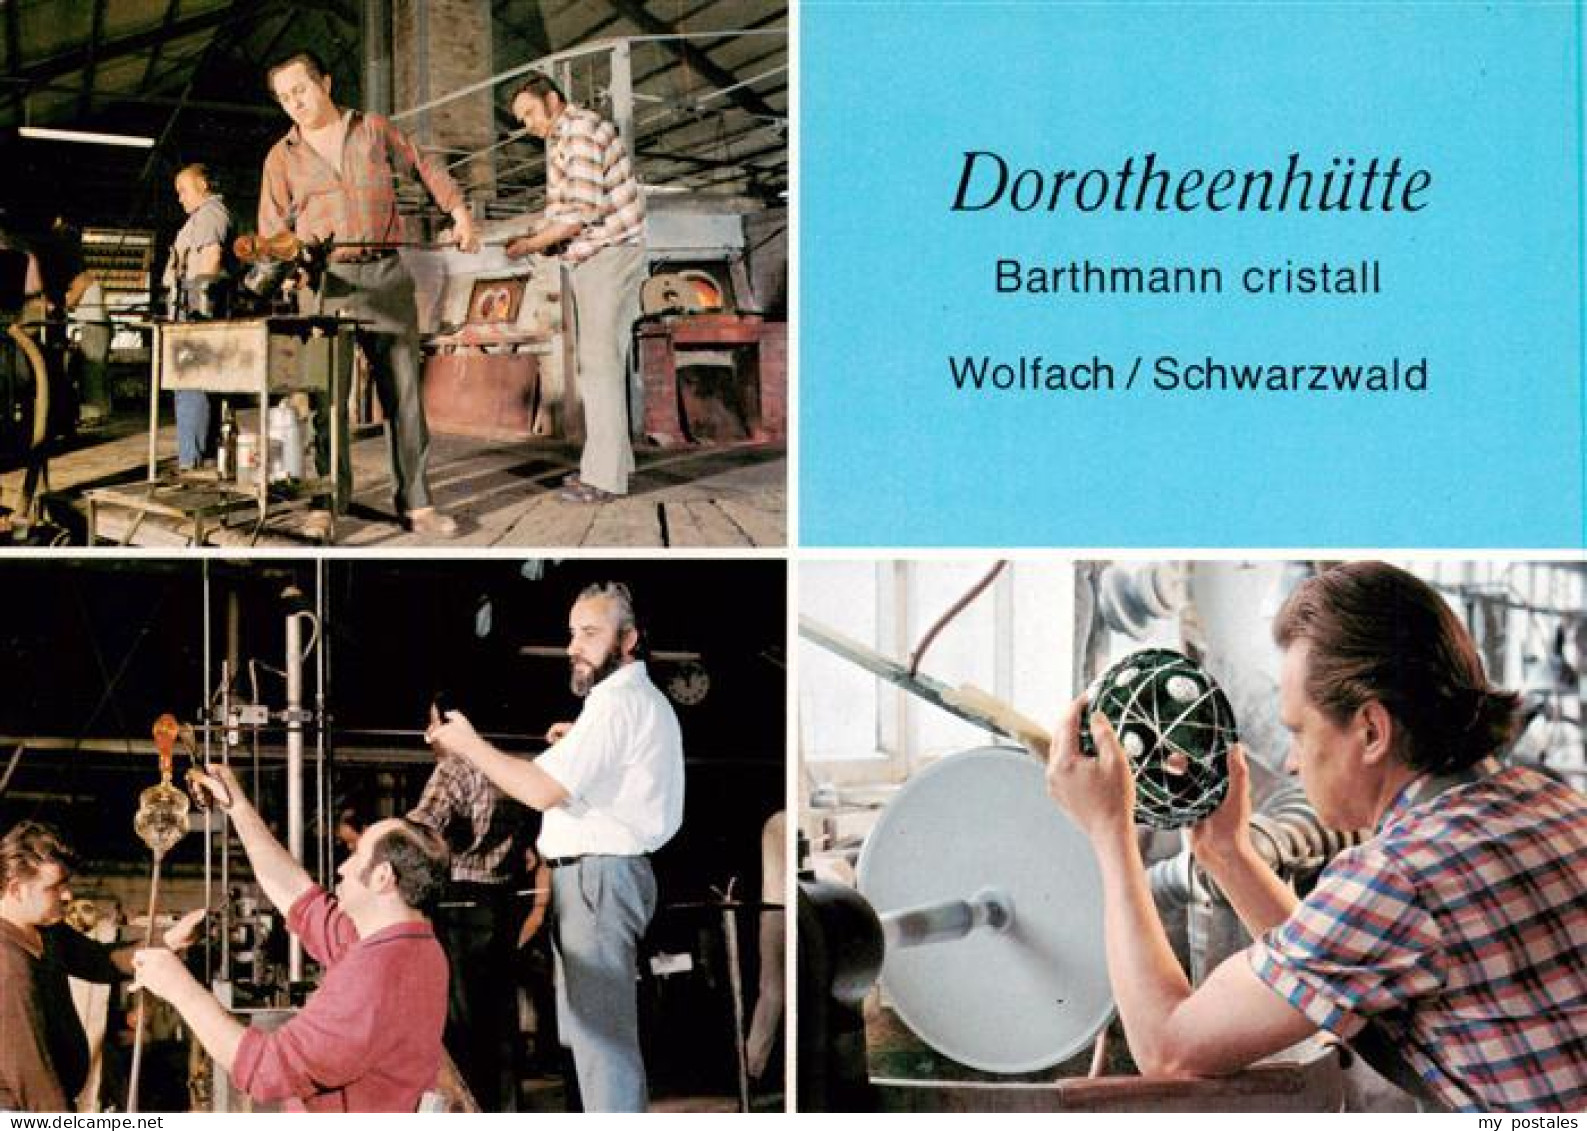 73931254 Wolfach_Schwarzwald Barthmann Cristall Dorotheenhuette Glasmacher Und G - Wolfach